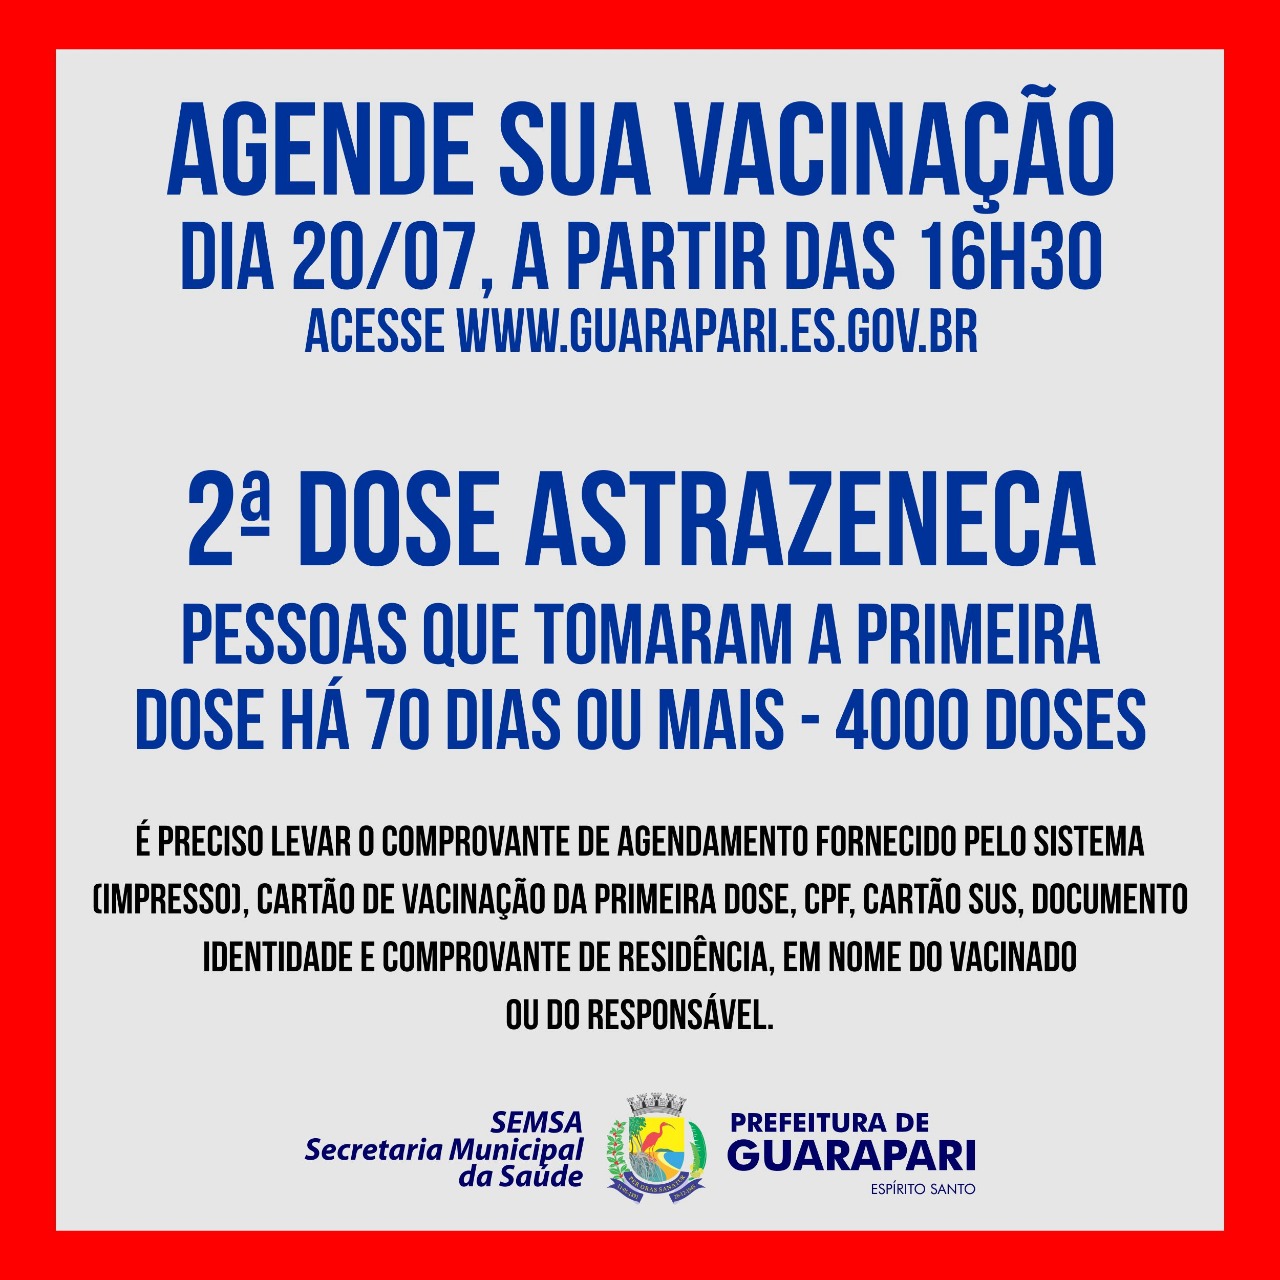 Prefeitura de Guarapari realiza agendamento para segunda dose de AstraZeneca nesta terça-feira 